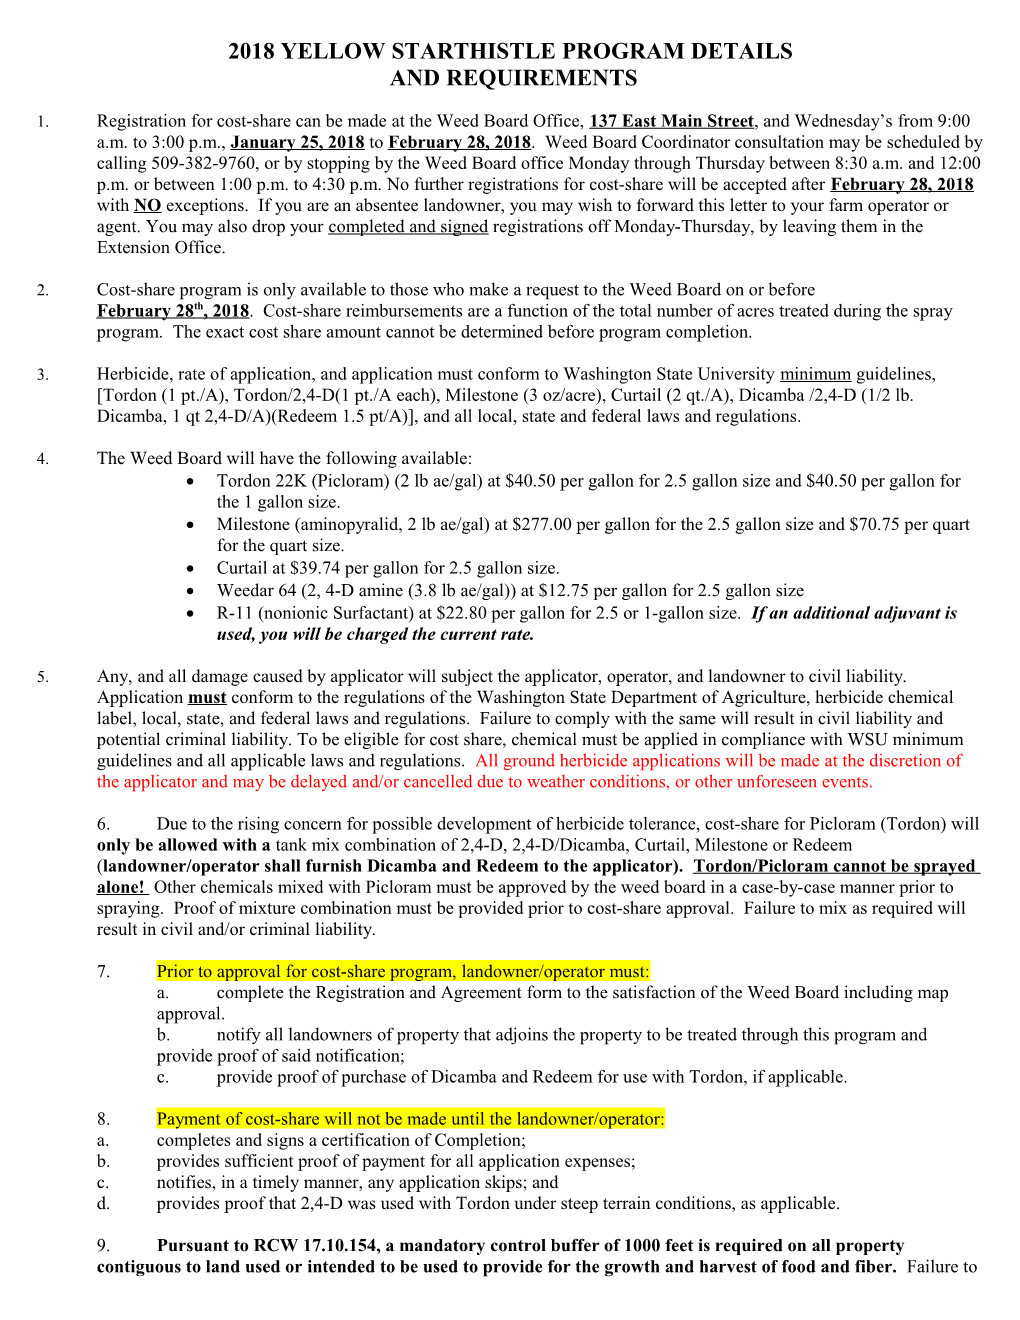 2003 Yellow Starthistle Program Details